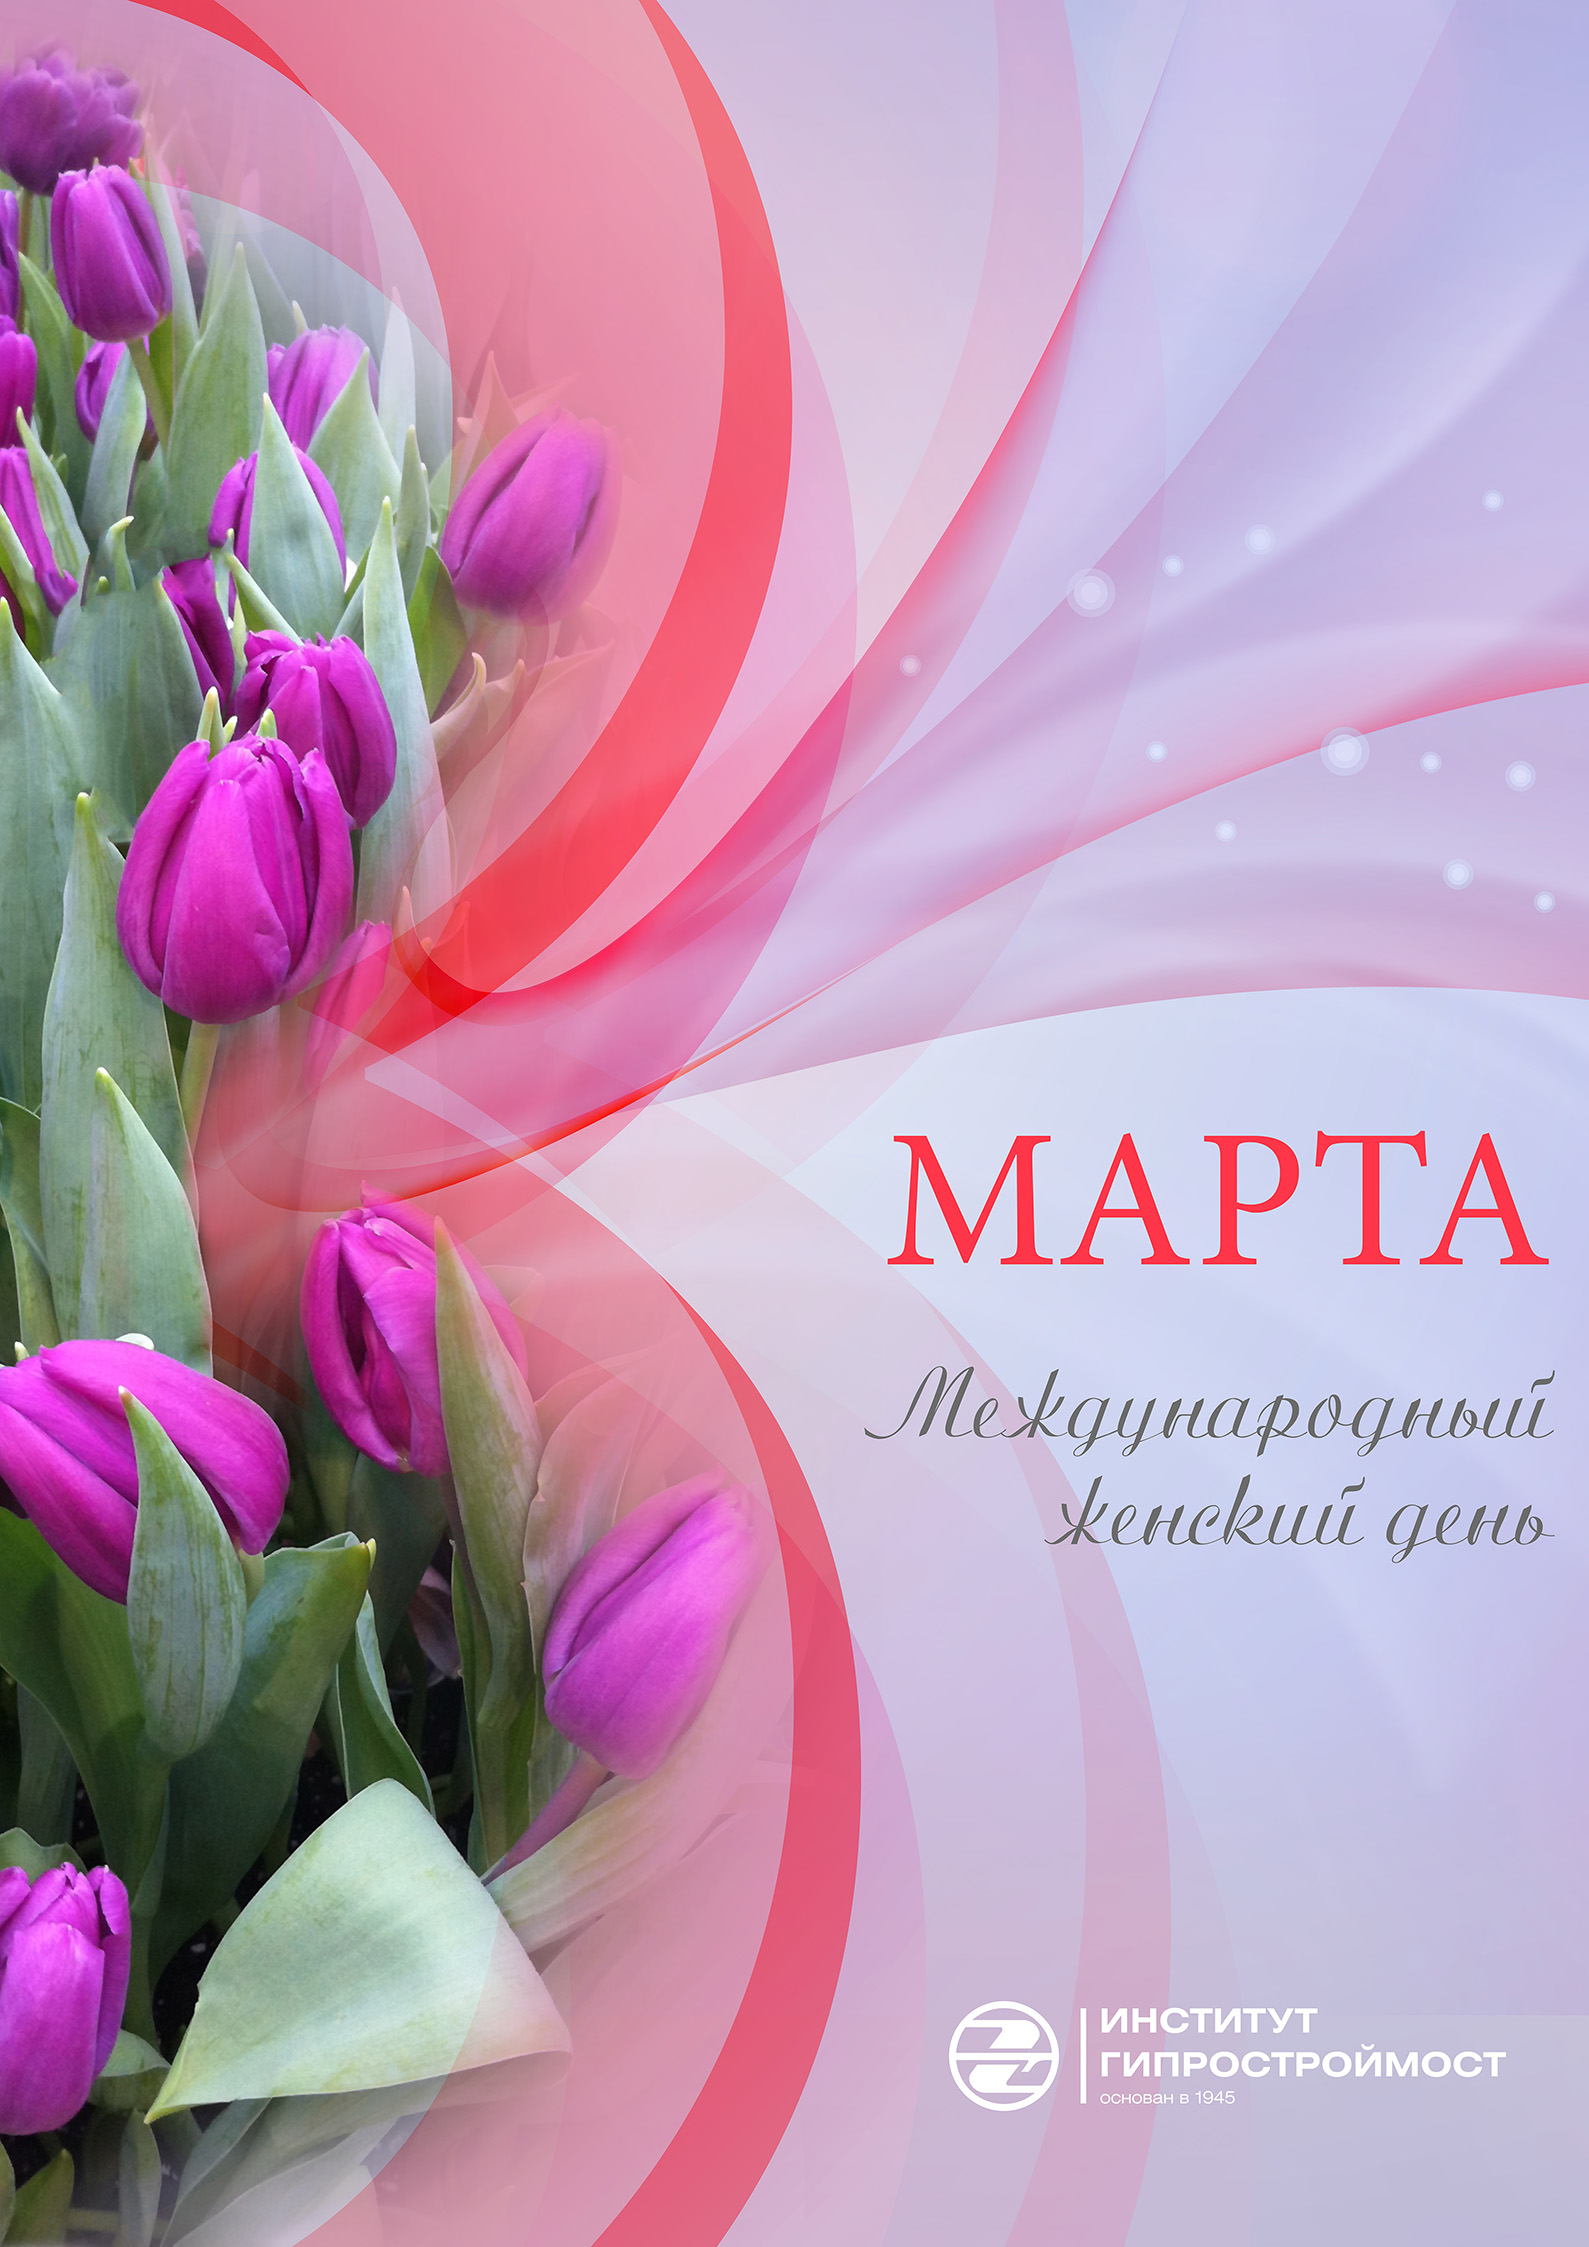 Плакат поздравит. «8 Марта» — купить в городе Воронеж, цена, фото — КанцОптТорг